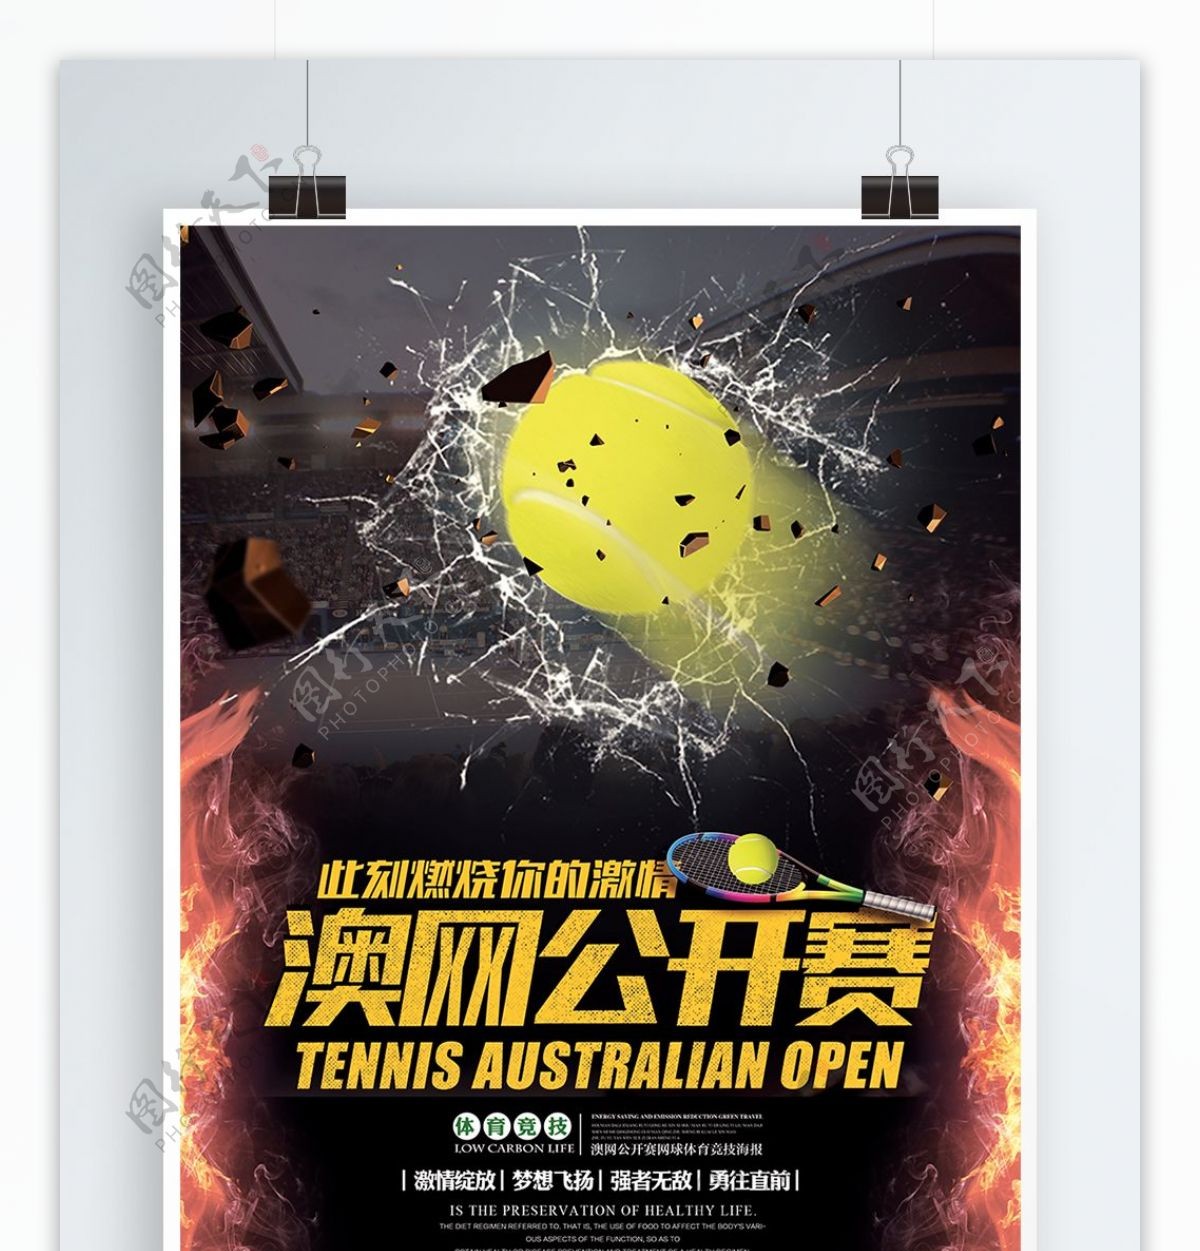 酷炫澳网公开赛网球体育竞技宣传海报展板